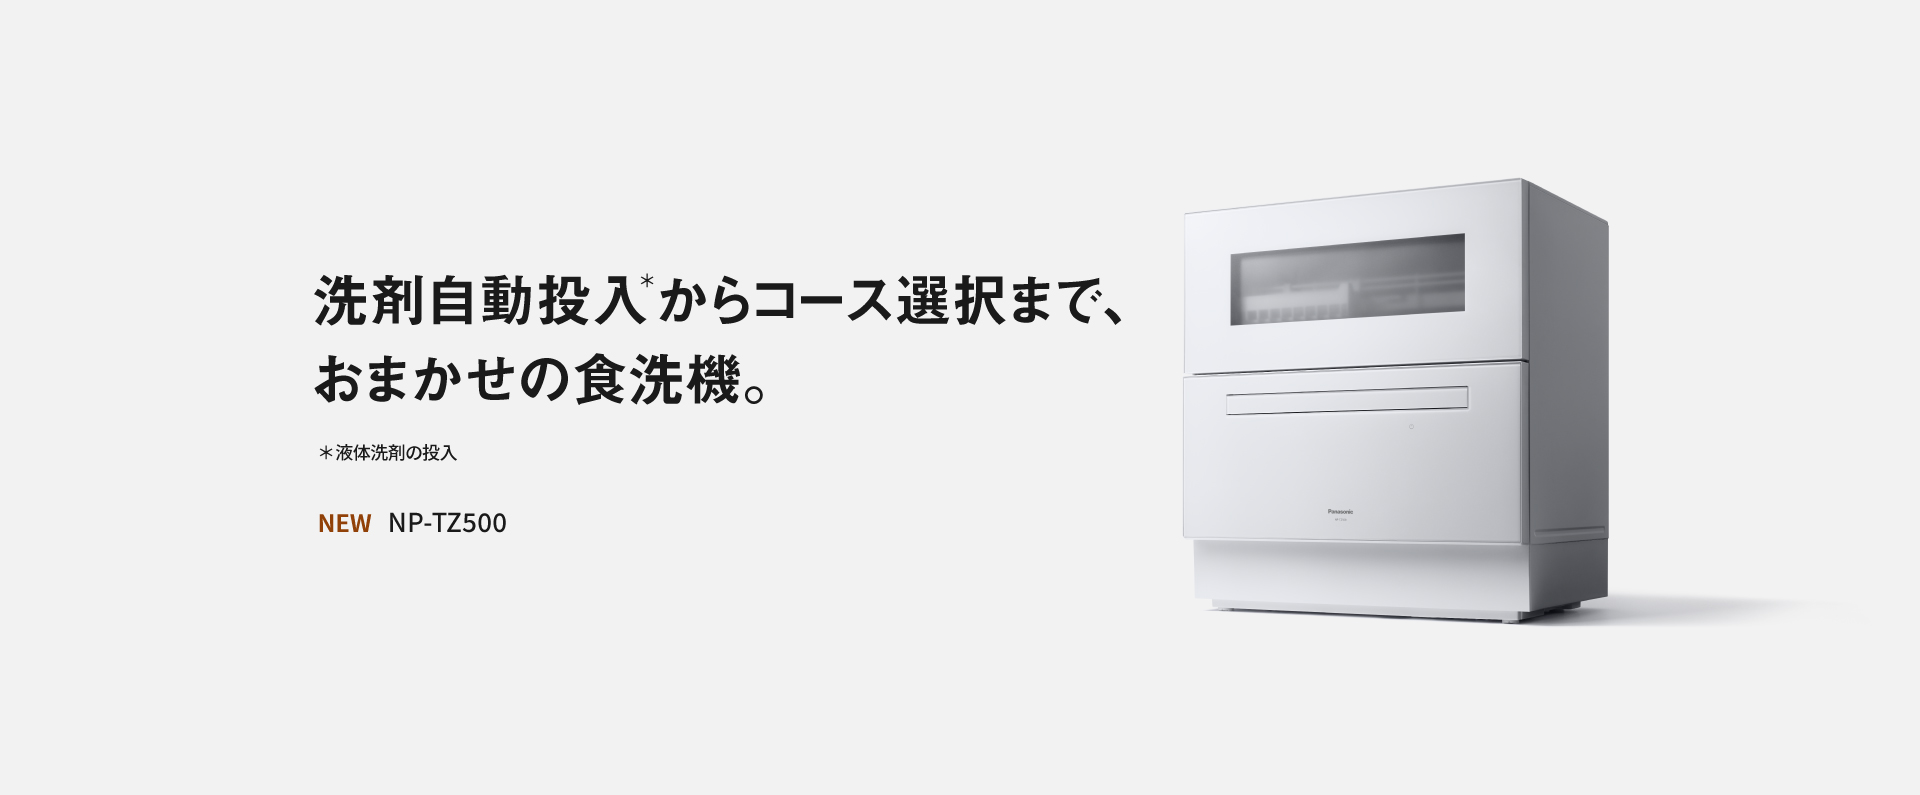 洗剤自動投入からコース選択まで、おまかせの食洗機。NP-TZ500